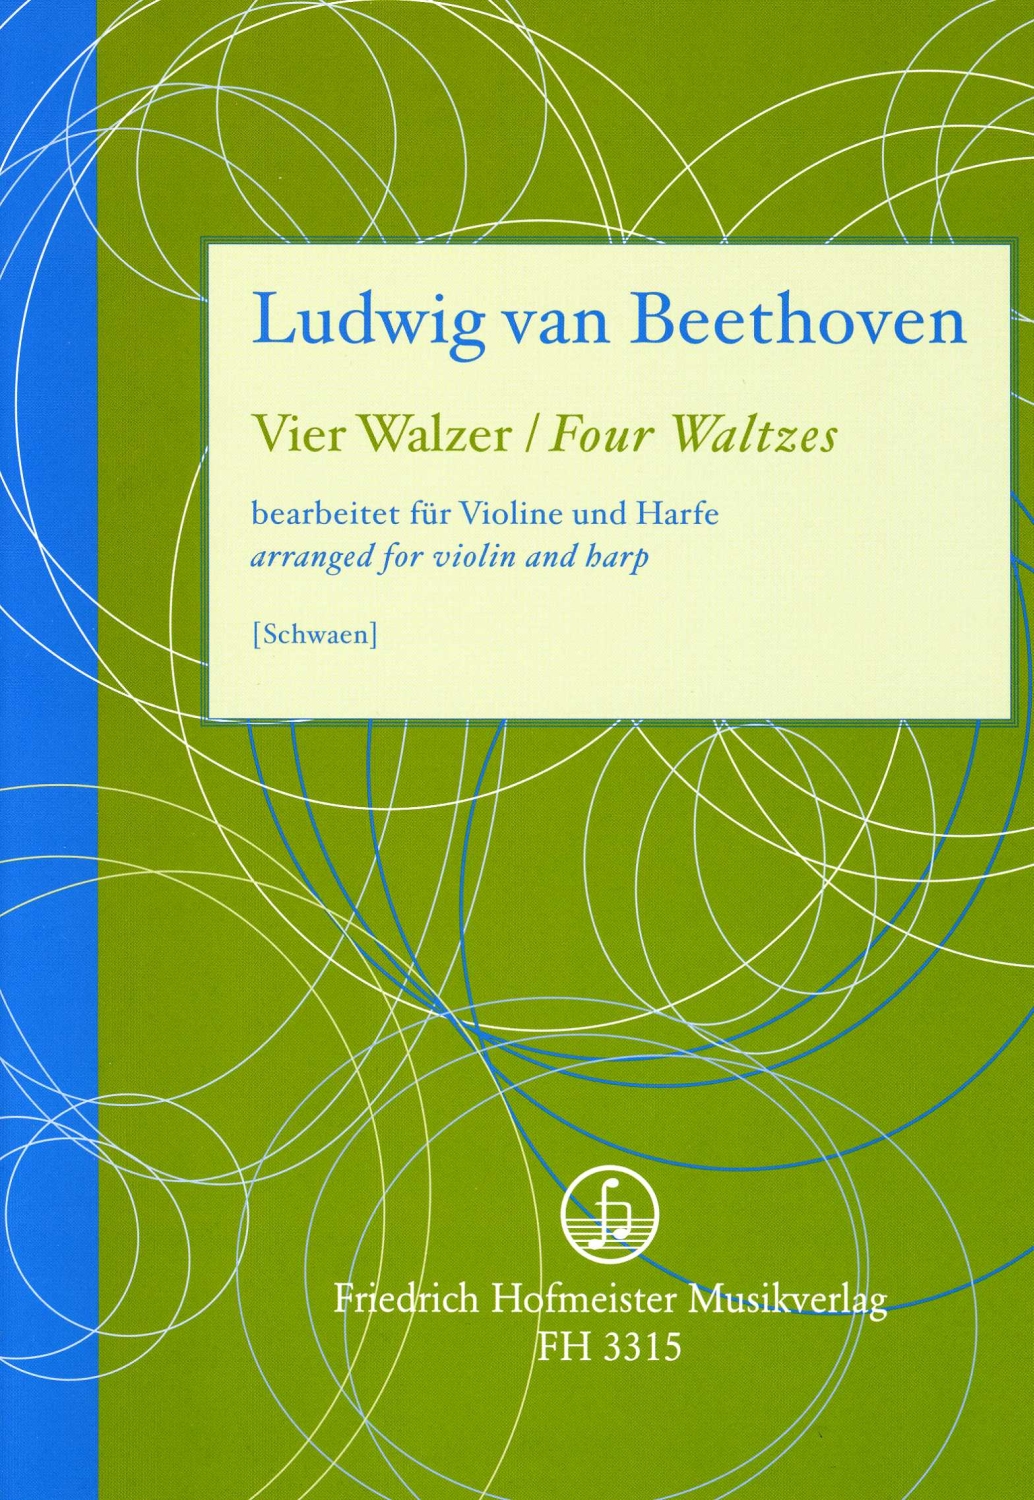 ludwig-van-beethoven-4-walzer-woo-8-7-vl-hp-_pst_-_0001.JPG